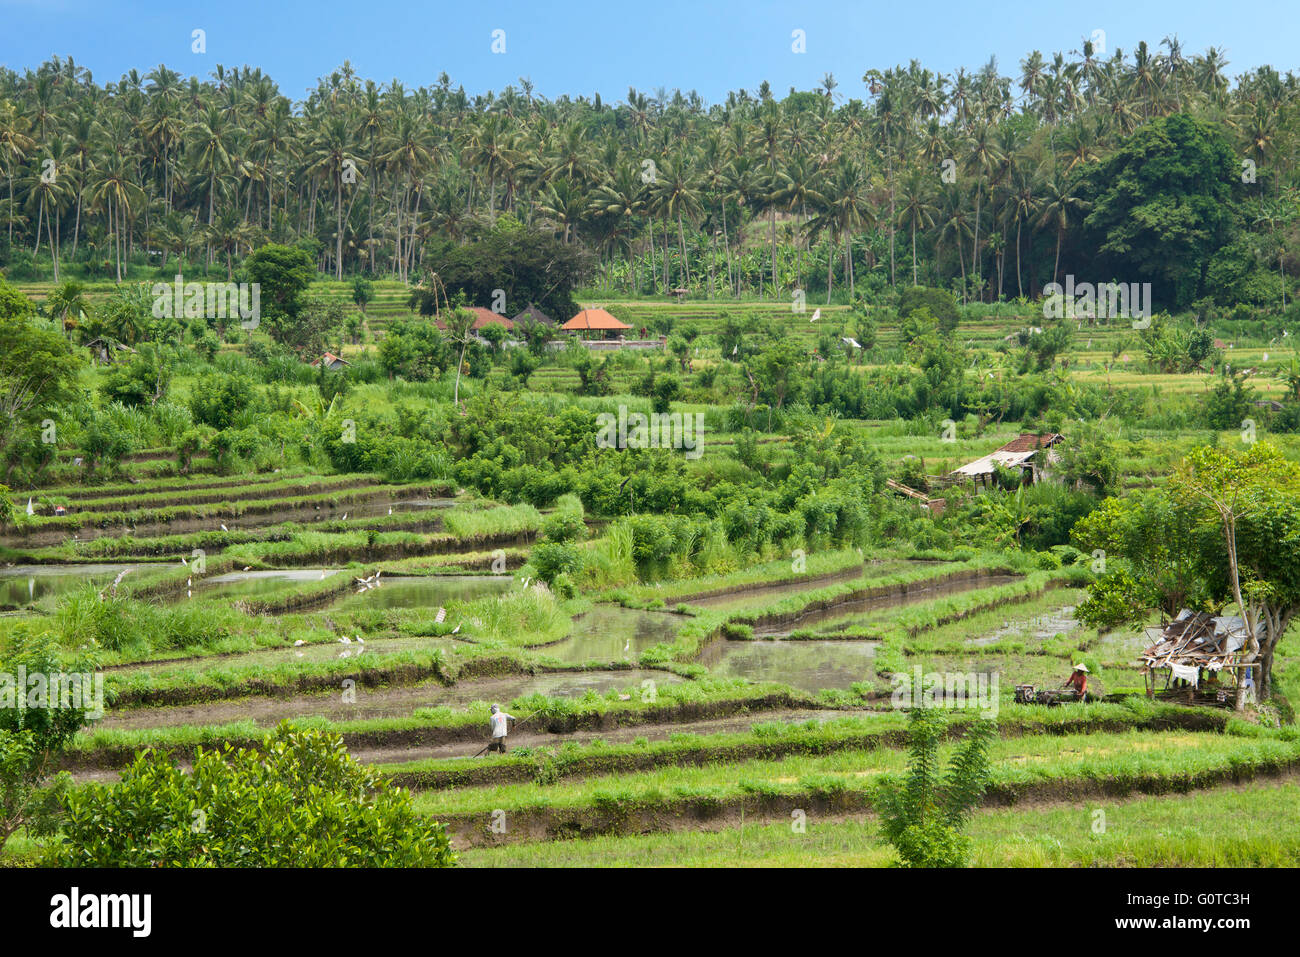 Ländliche Landschaft mit Reisfeldern Abang Bali Indonesien Stockfoto